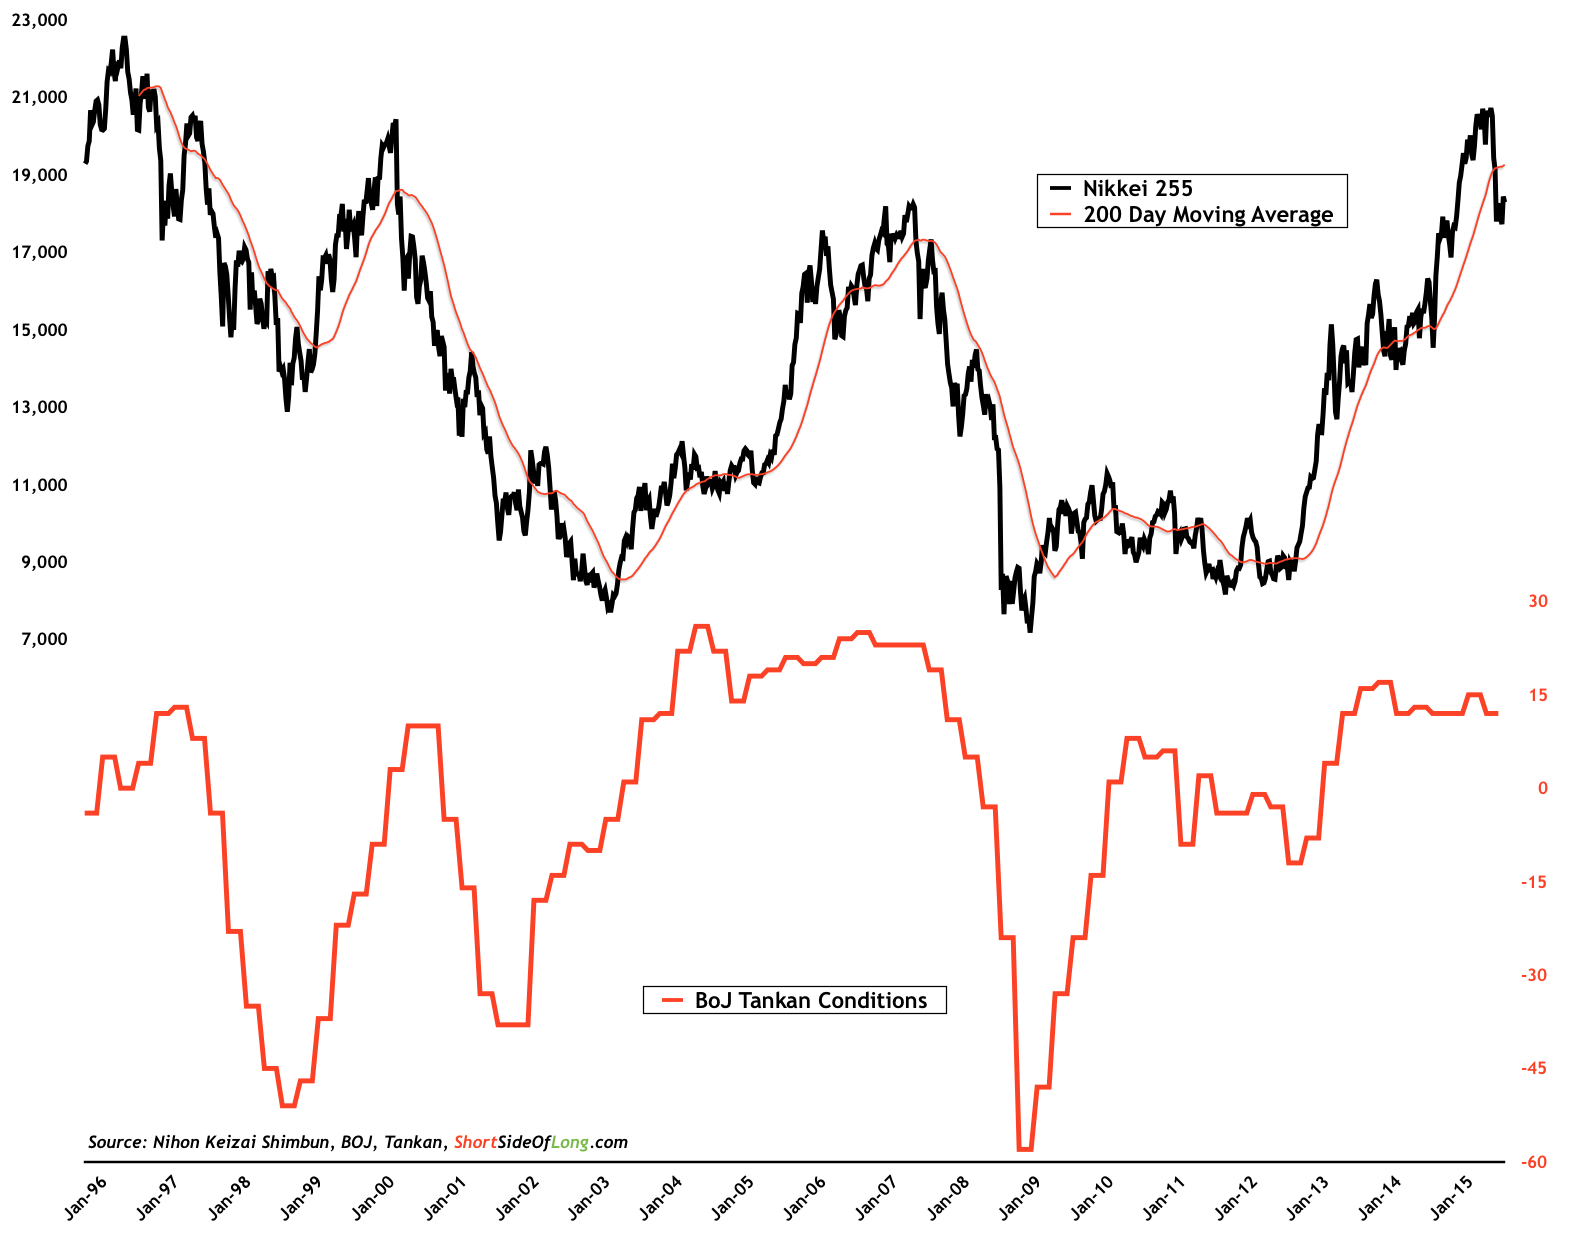 Nikkei vs BOJ Tankan Conditions 1996-2015